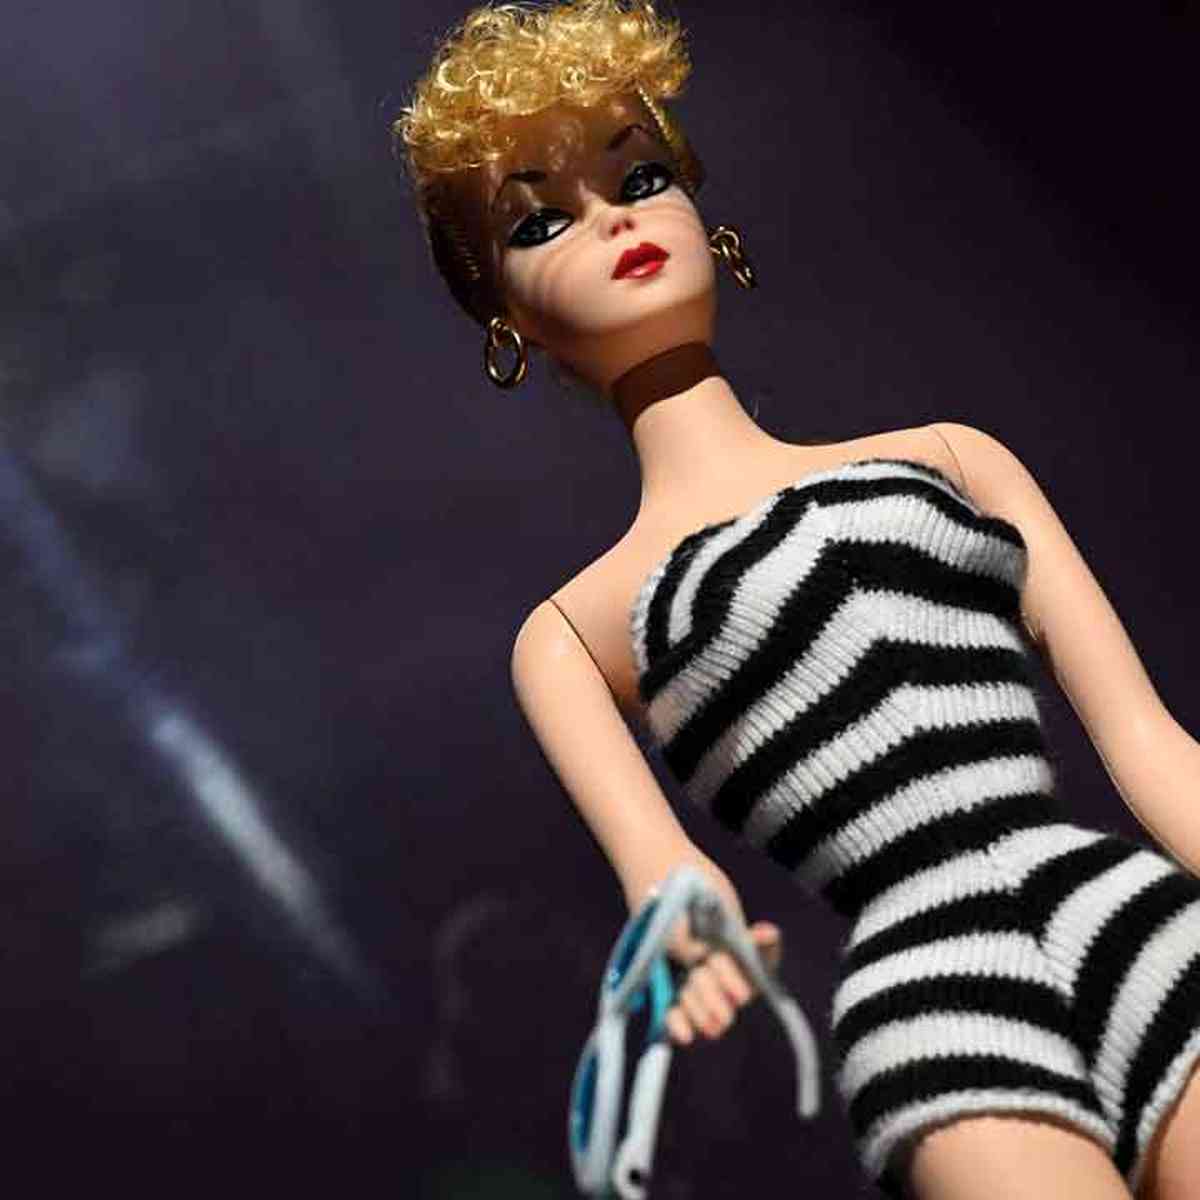 Barbie no Mundo dos Jogos filme - Onde assistir